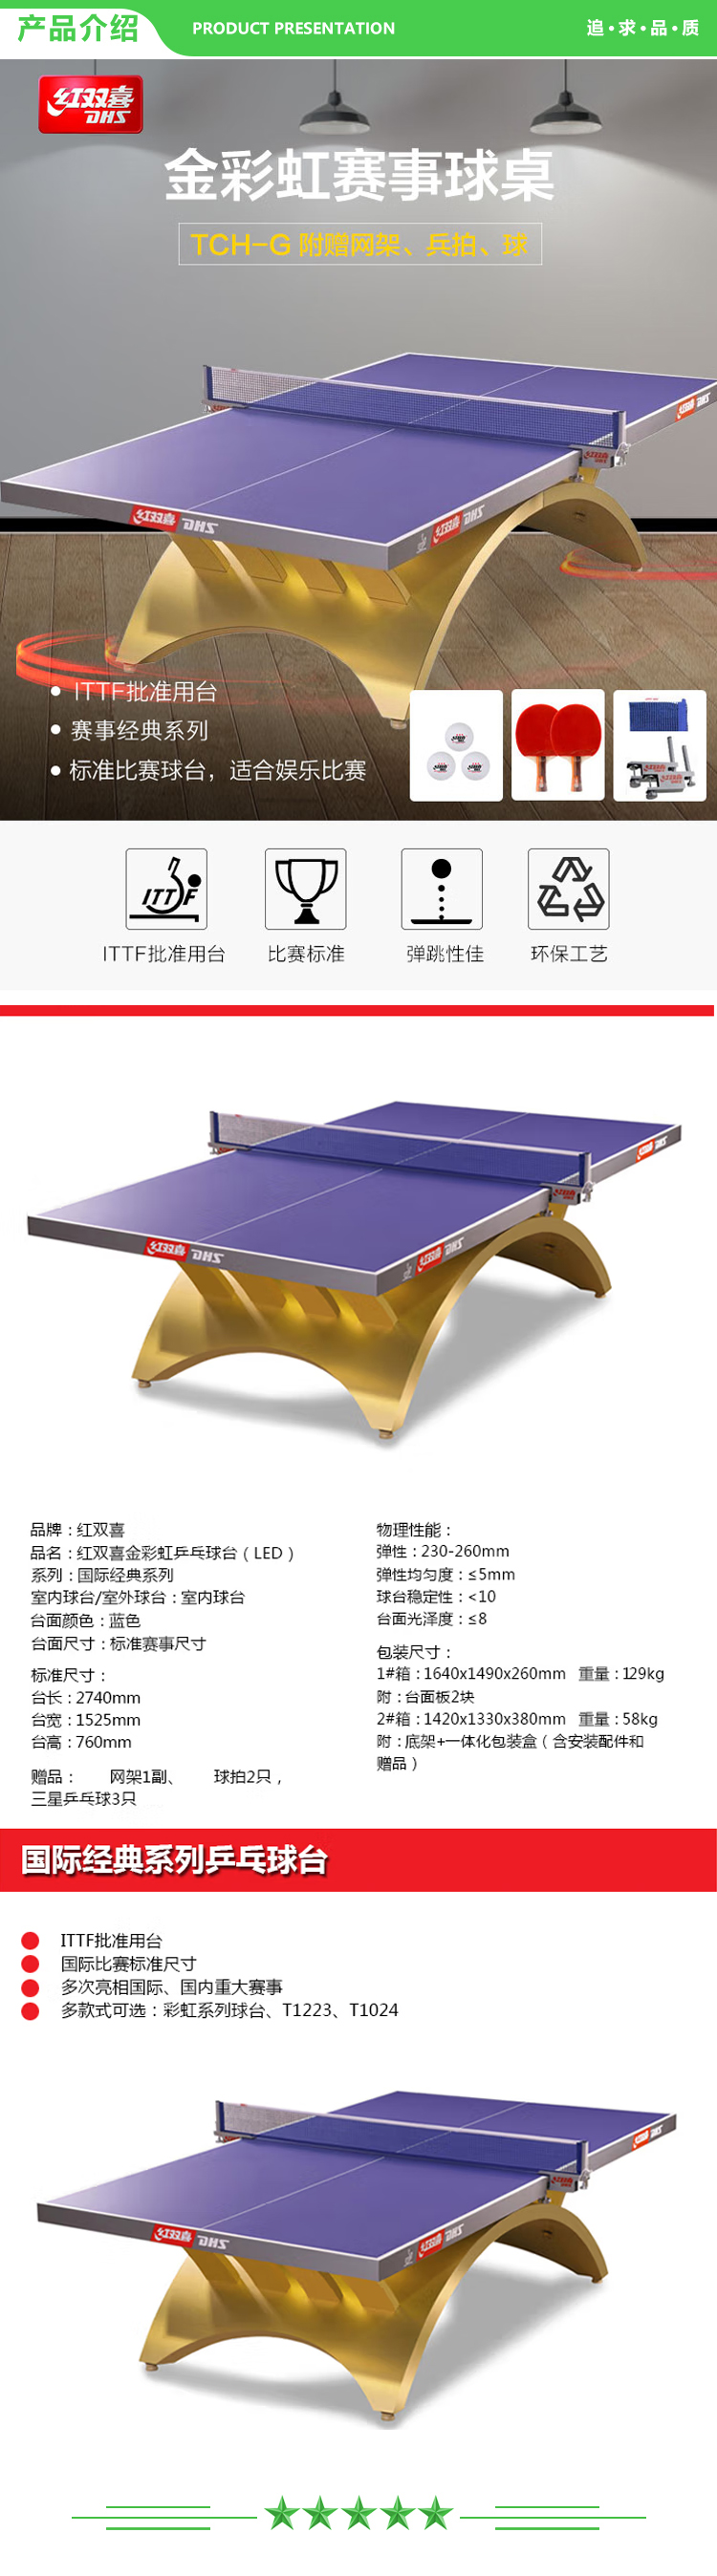 红双喜 DHS DXBG186-1 金彩虹乒乓球桌室内乒乓球台训练比赛用乒乓球案子  (2).jpg